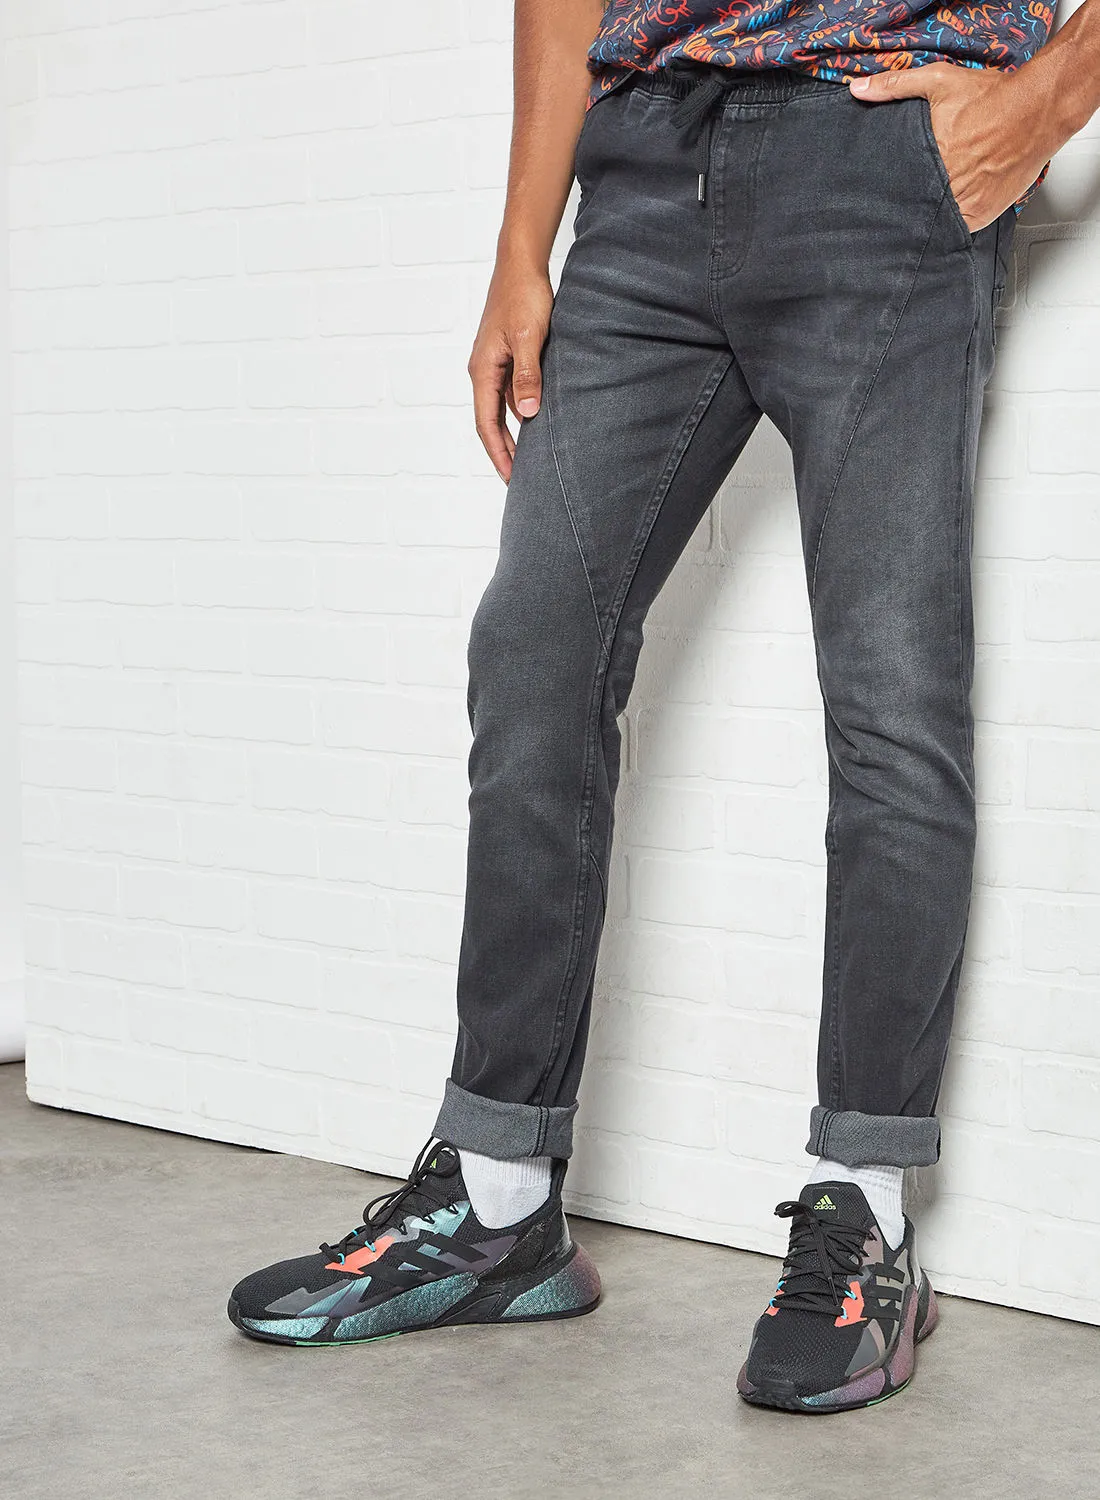 Blue Saint Men's Comfortable Stylish Cotton Jeans Grey